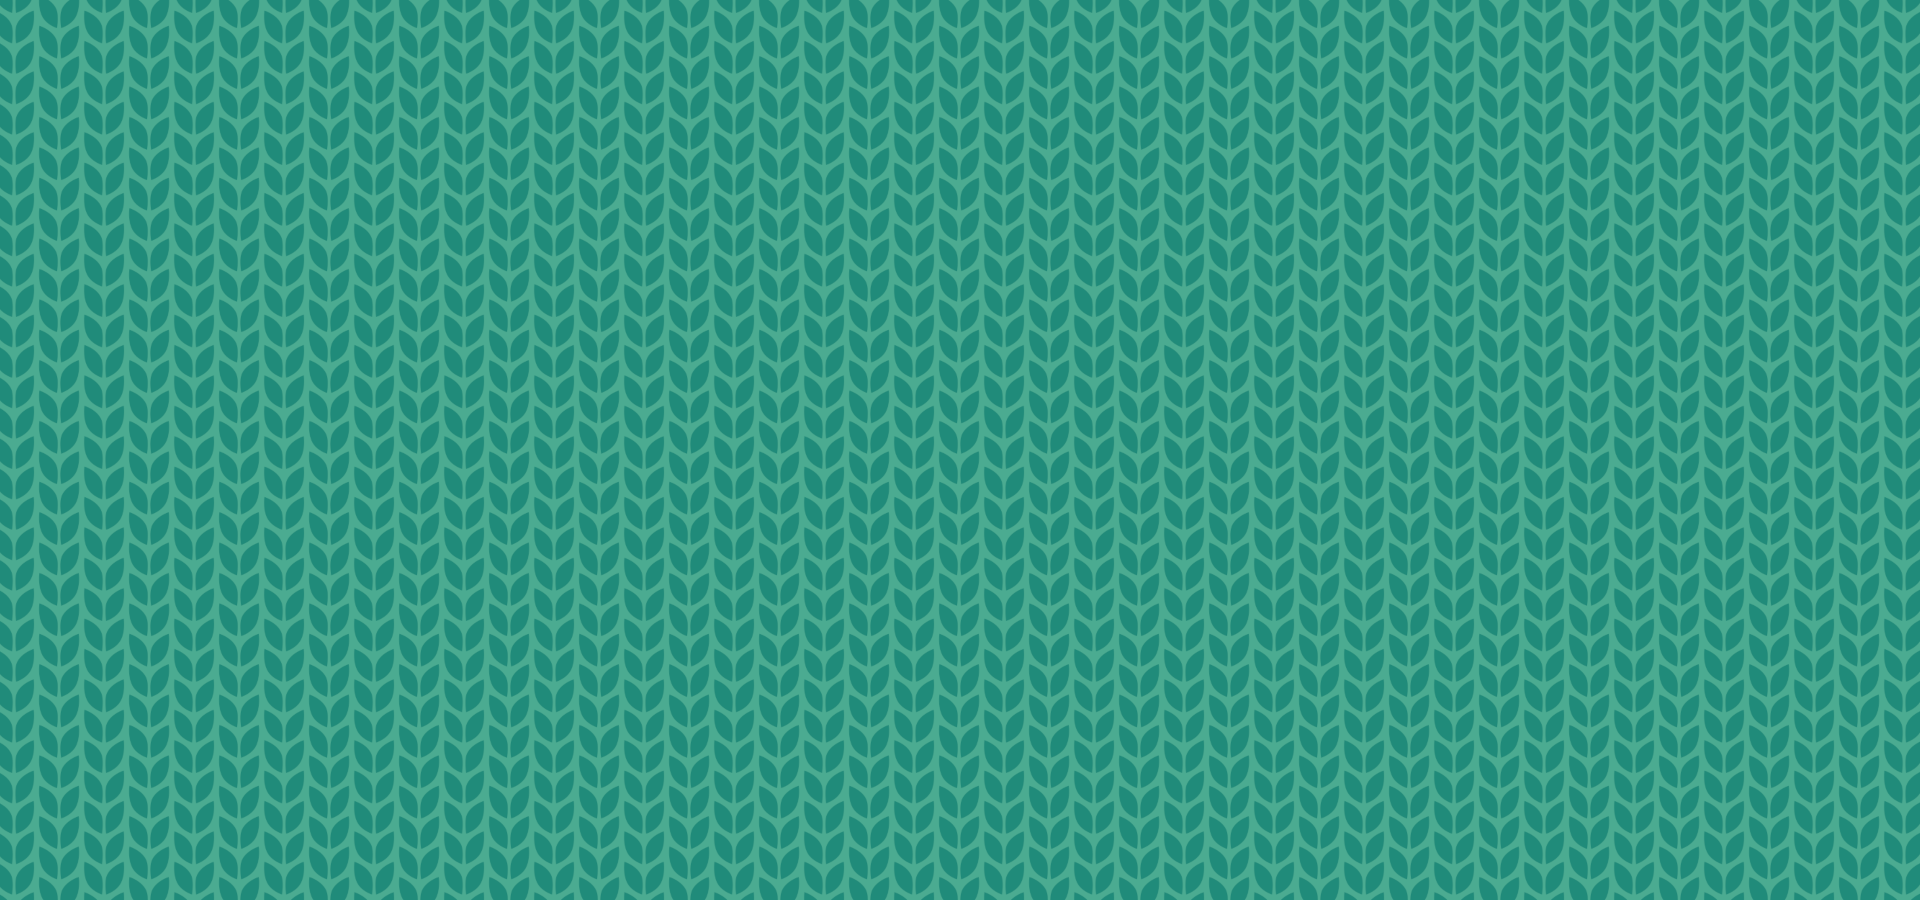 Green leaves knit pattern